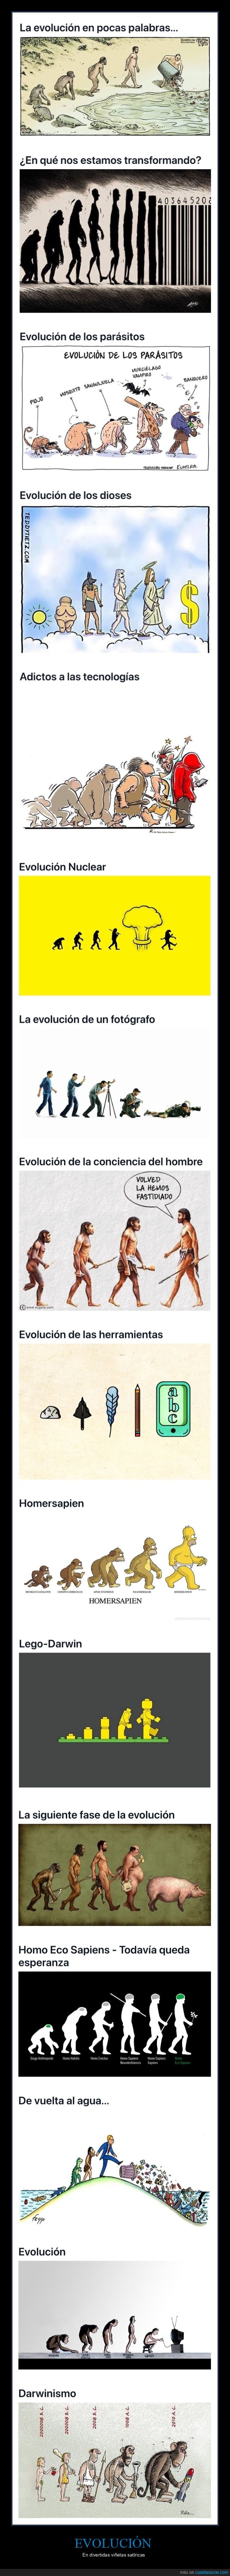 evolución,viñetas